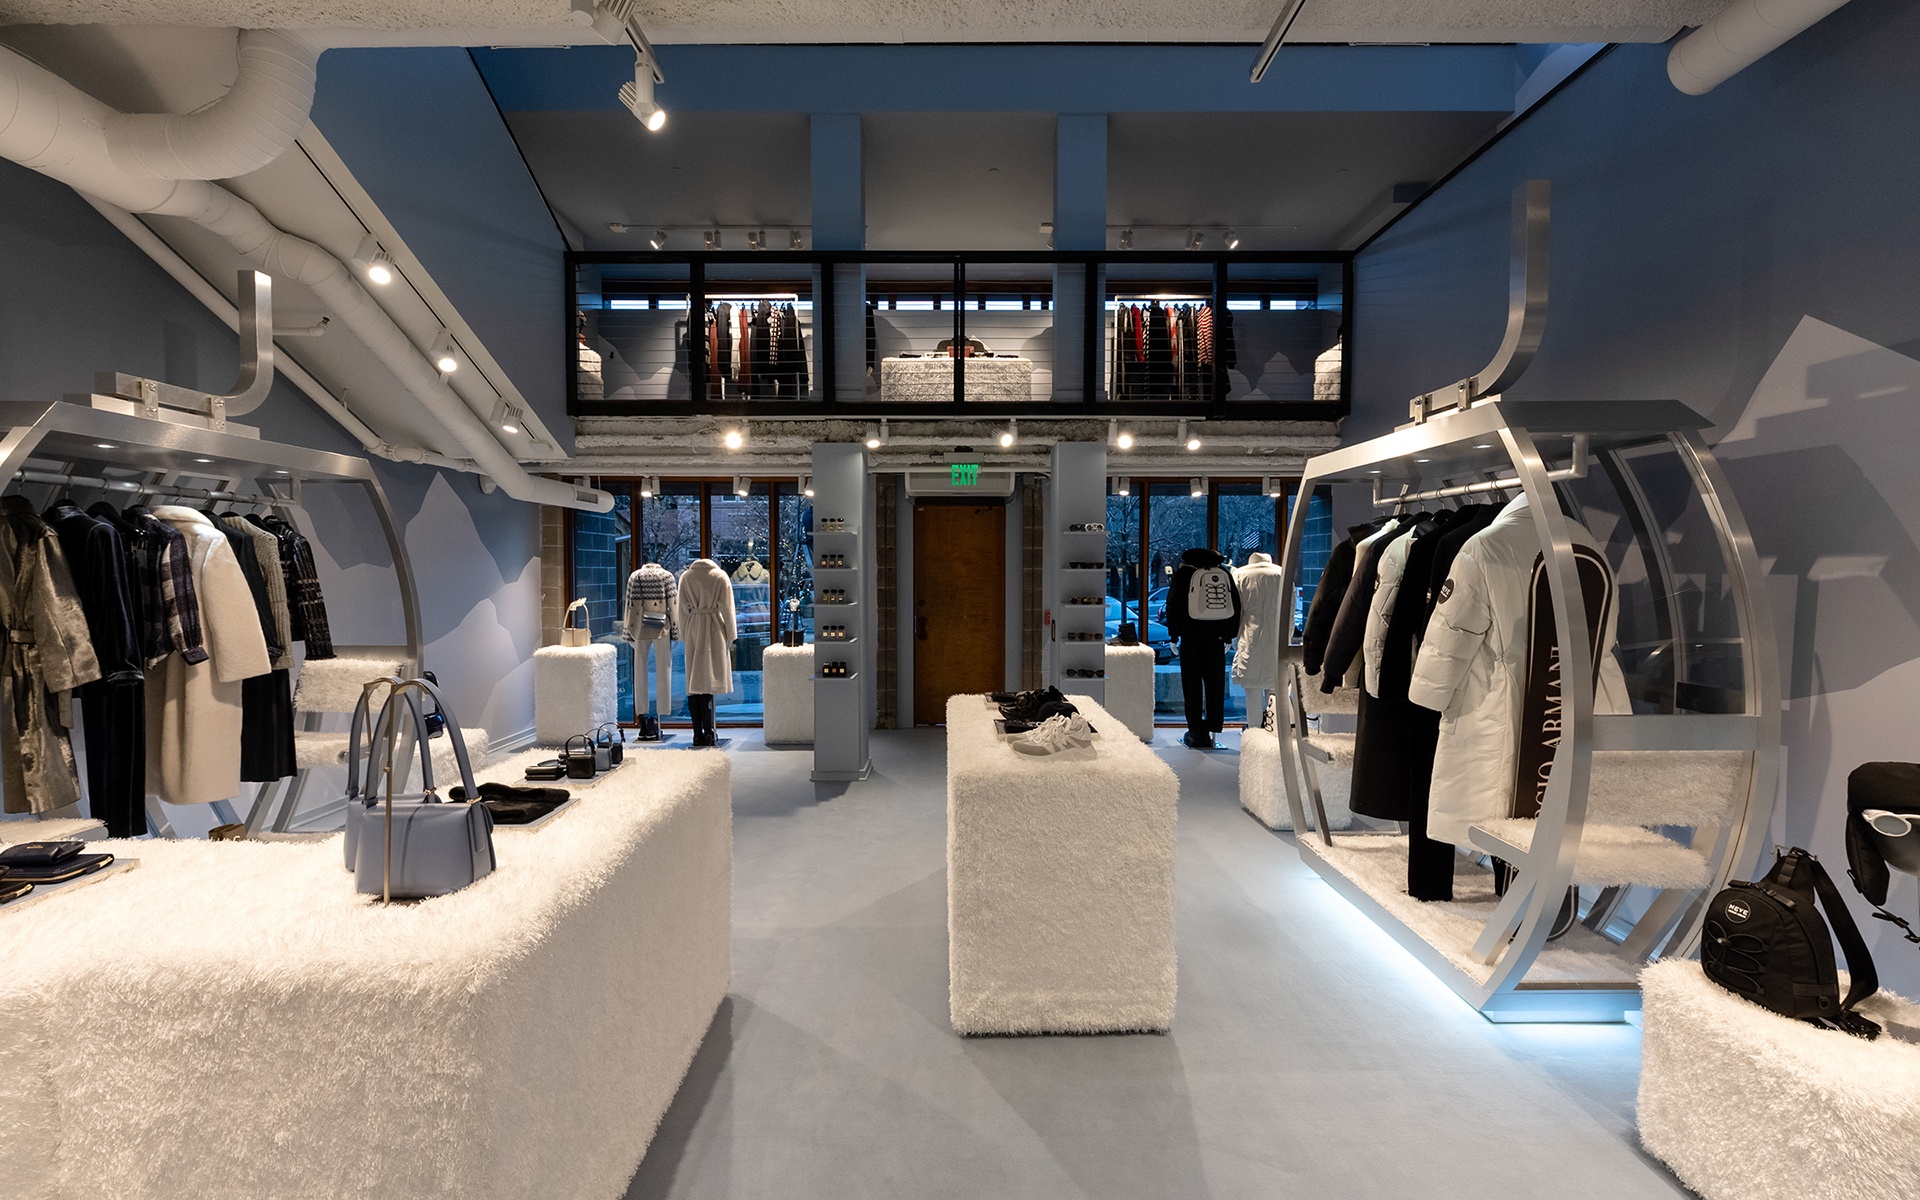 Giorgio Armani Boutique, New Boutique Concept